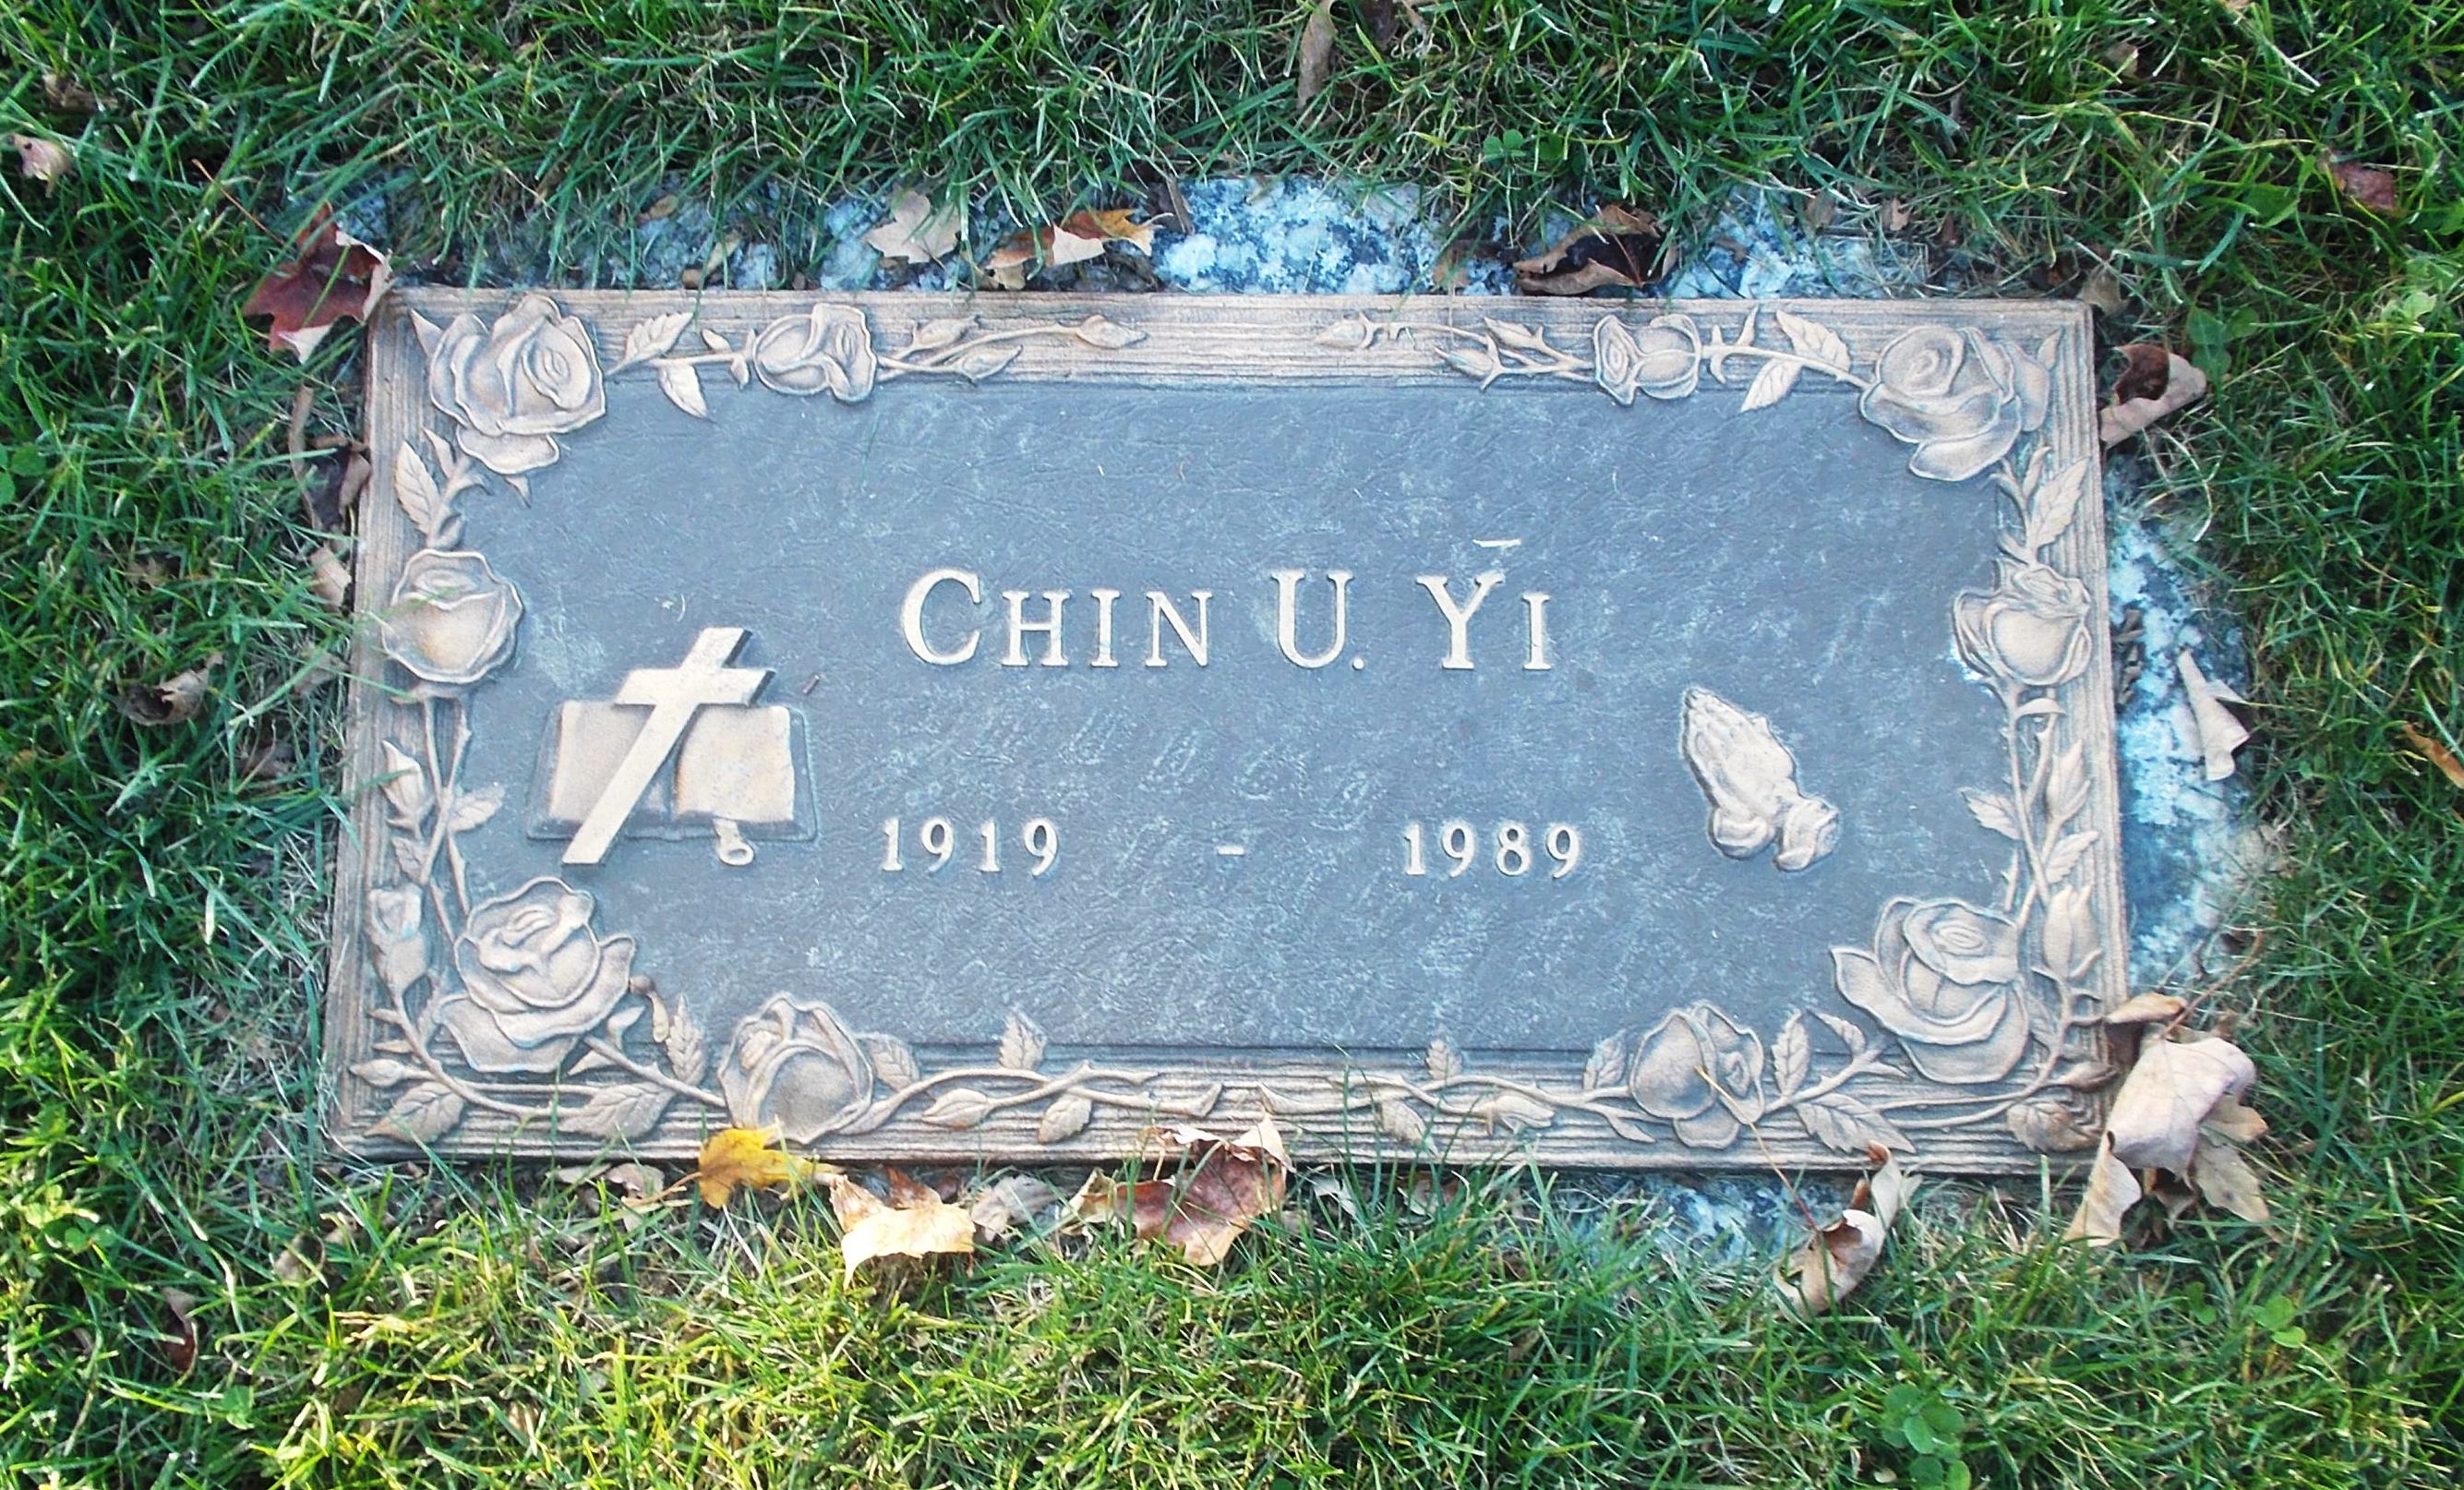 Chin U Yi